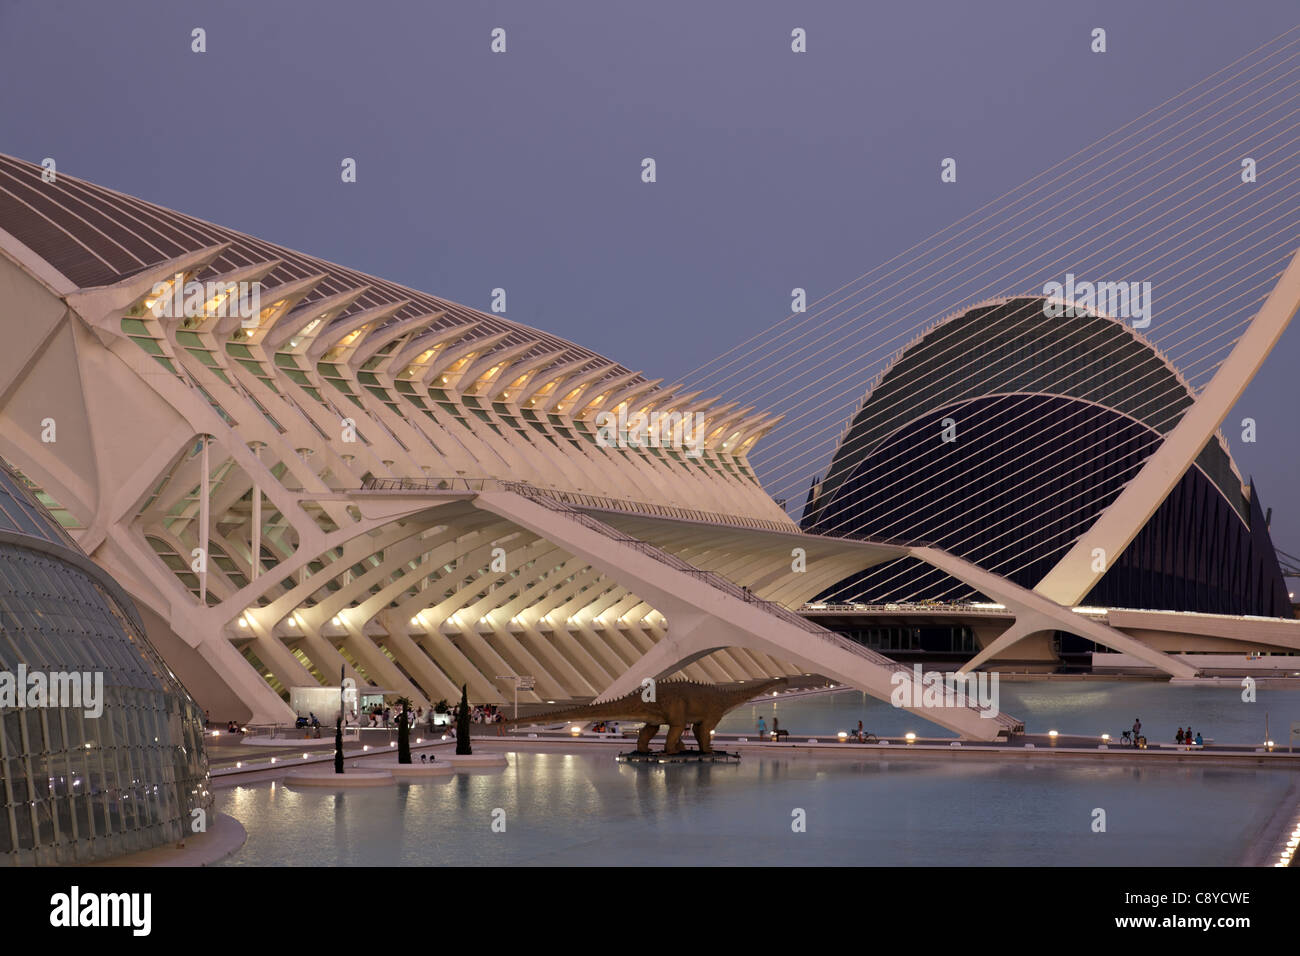 City of sciences and arts by architect Santiago Calatrava, Valencia , Spain,  Stock Photo